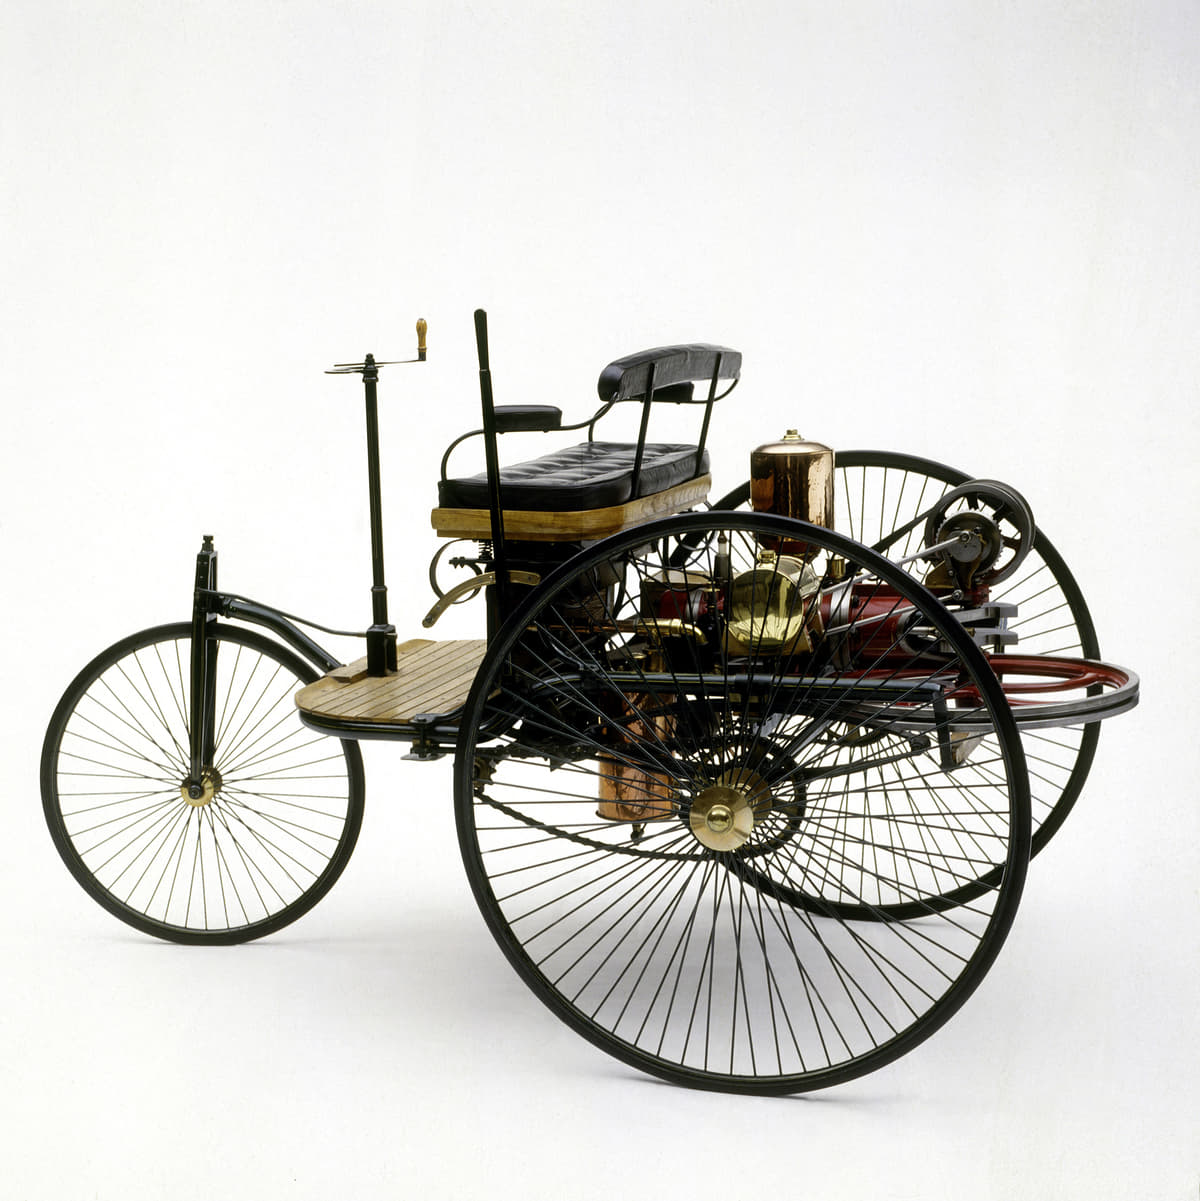 ダイムラーのエンジン付車第一号の３輪プロトタイプ